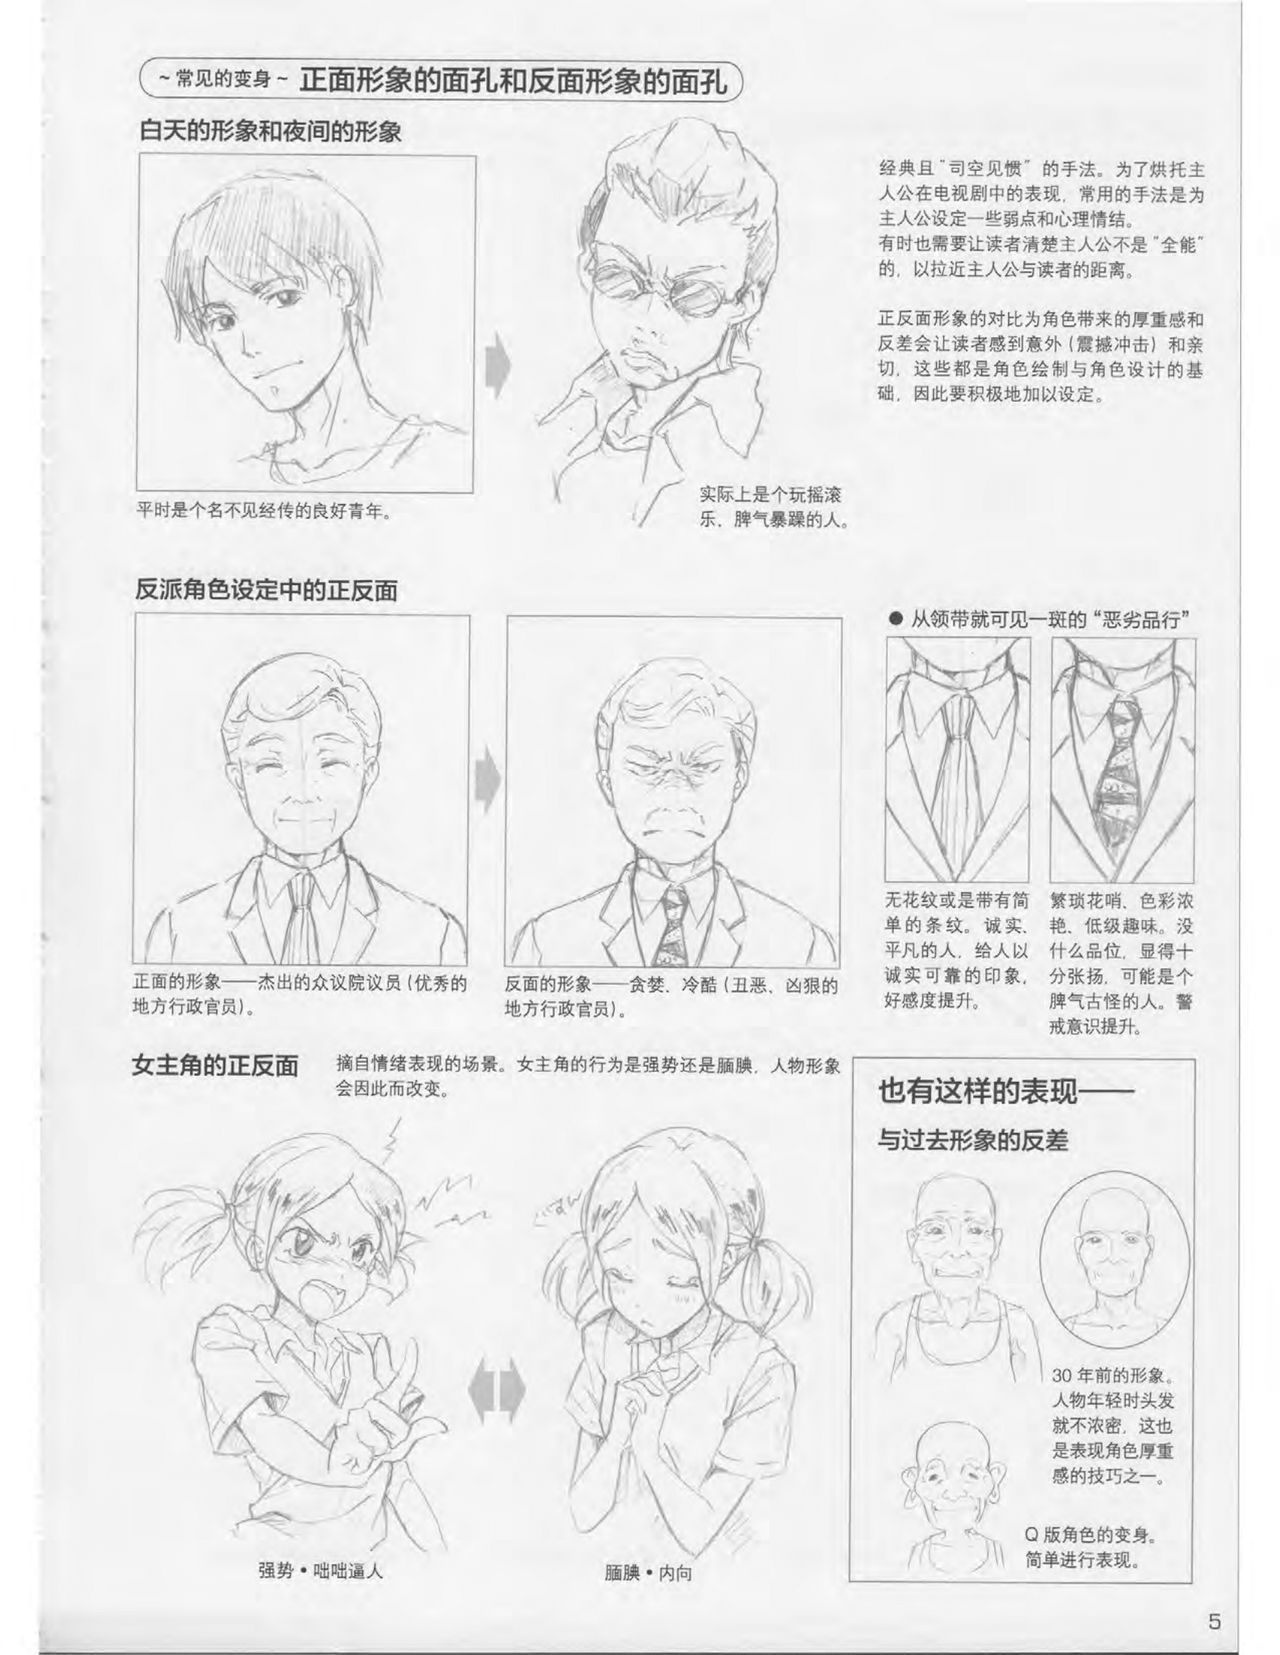 Japanese Manga Master Lecture 3: Lin Akira and Kakumaru Maru Talk About Glamorous Character Modeling 5